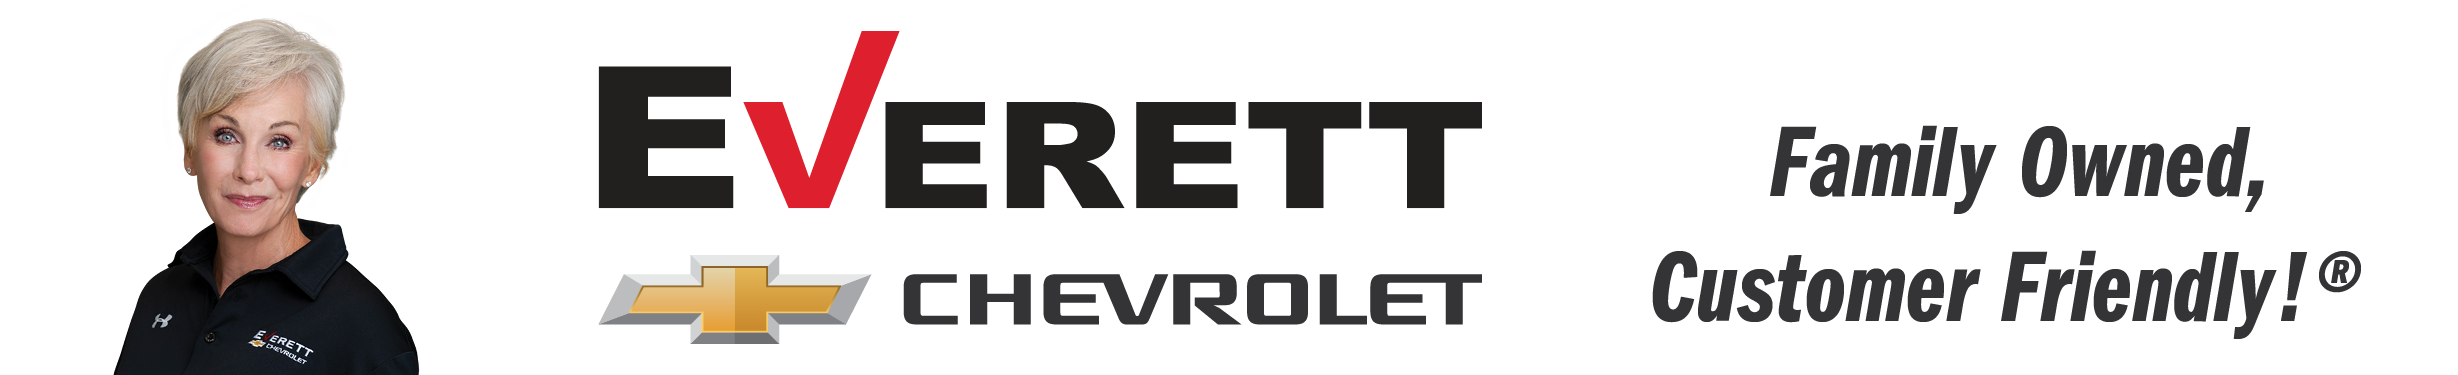 Everett Chevrolet